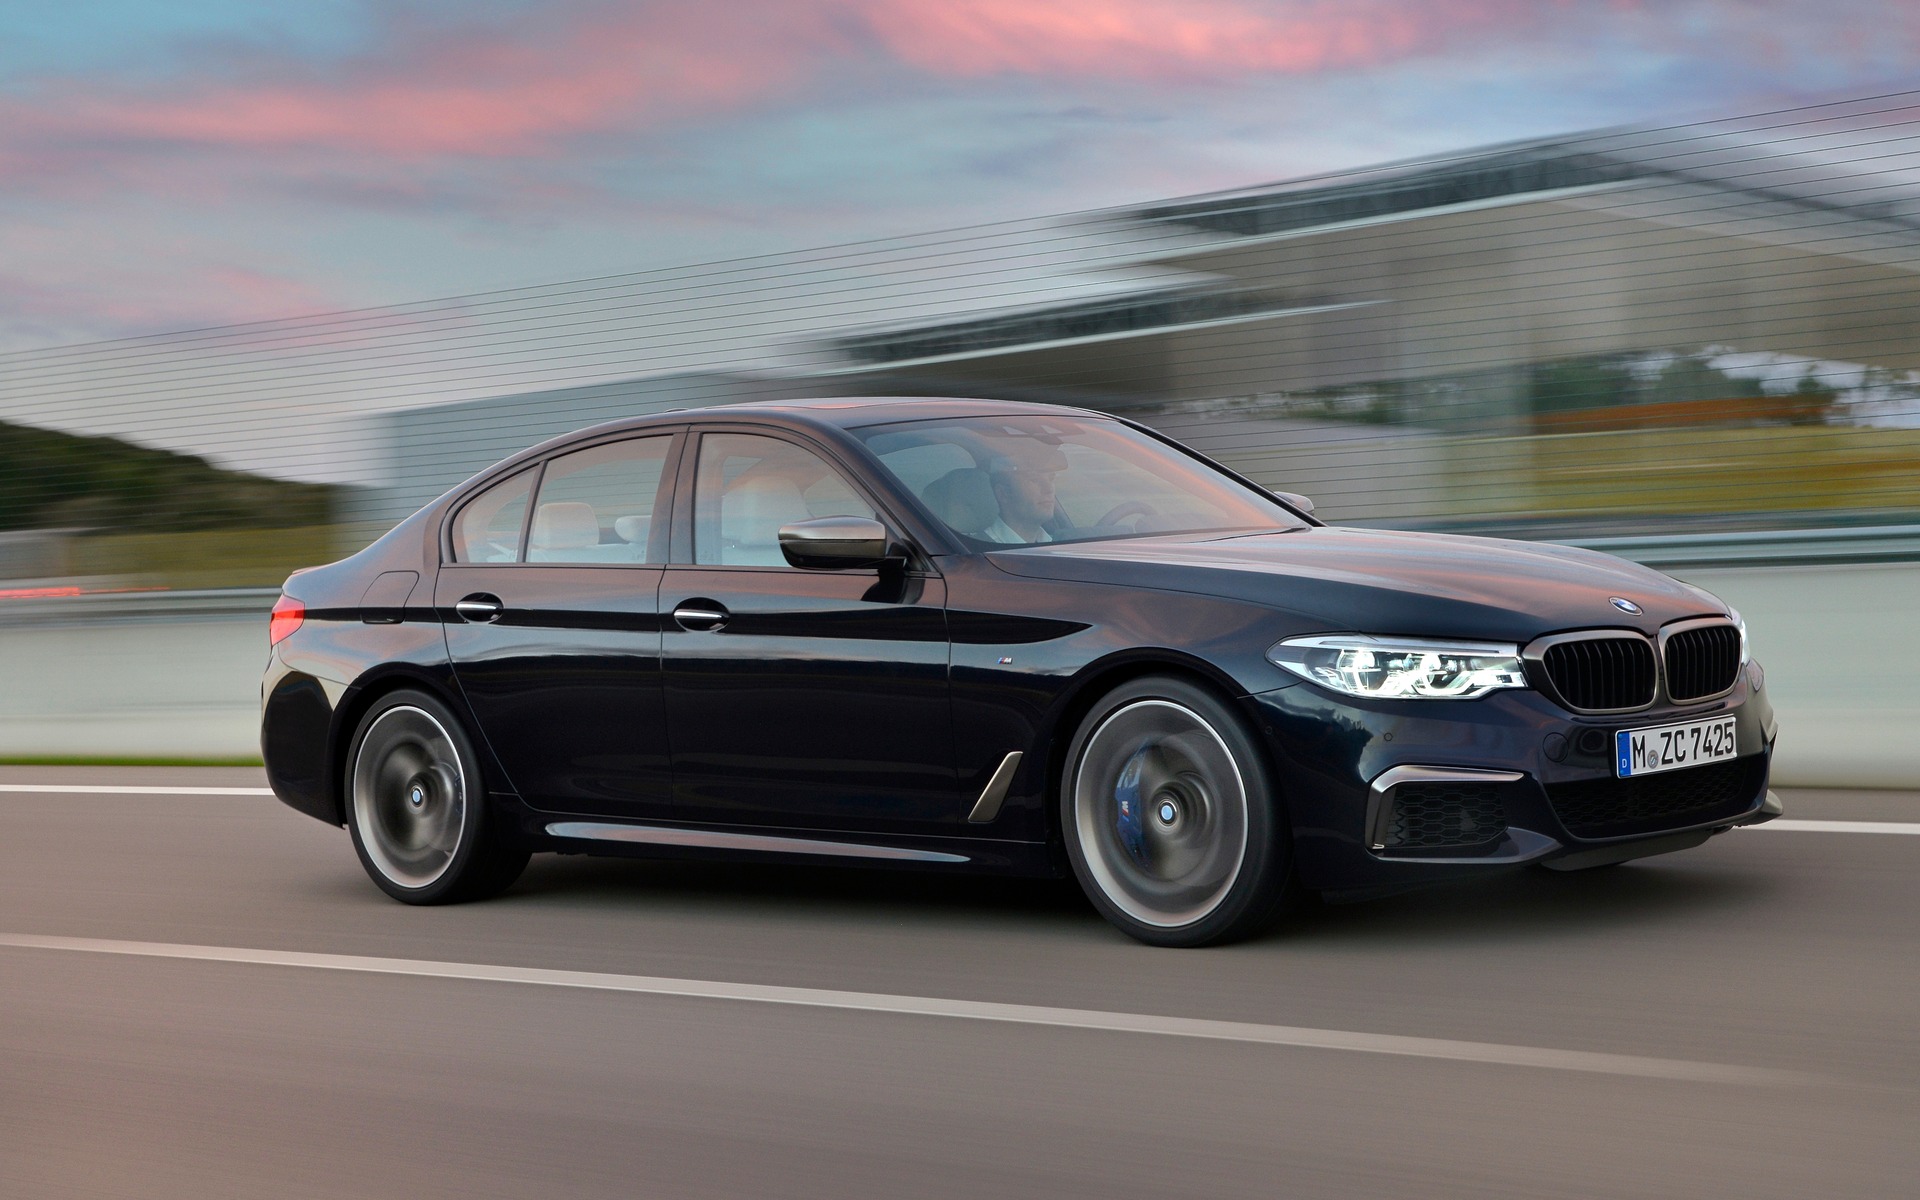 Meilleurs achats du Guide de l'auto : BMW Série 5 - Guide Auto